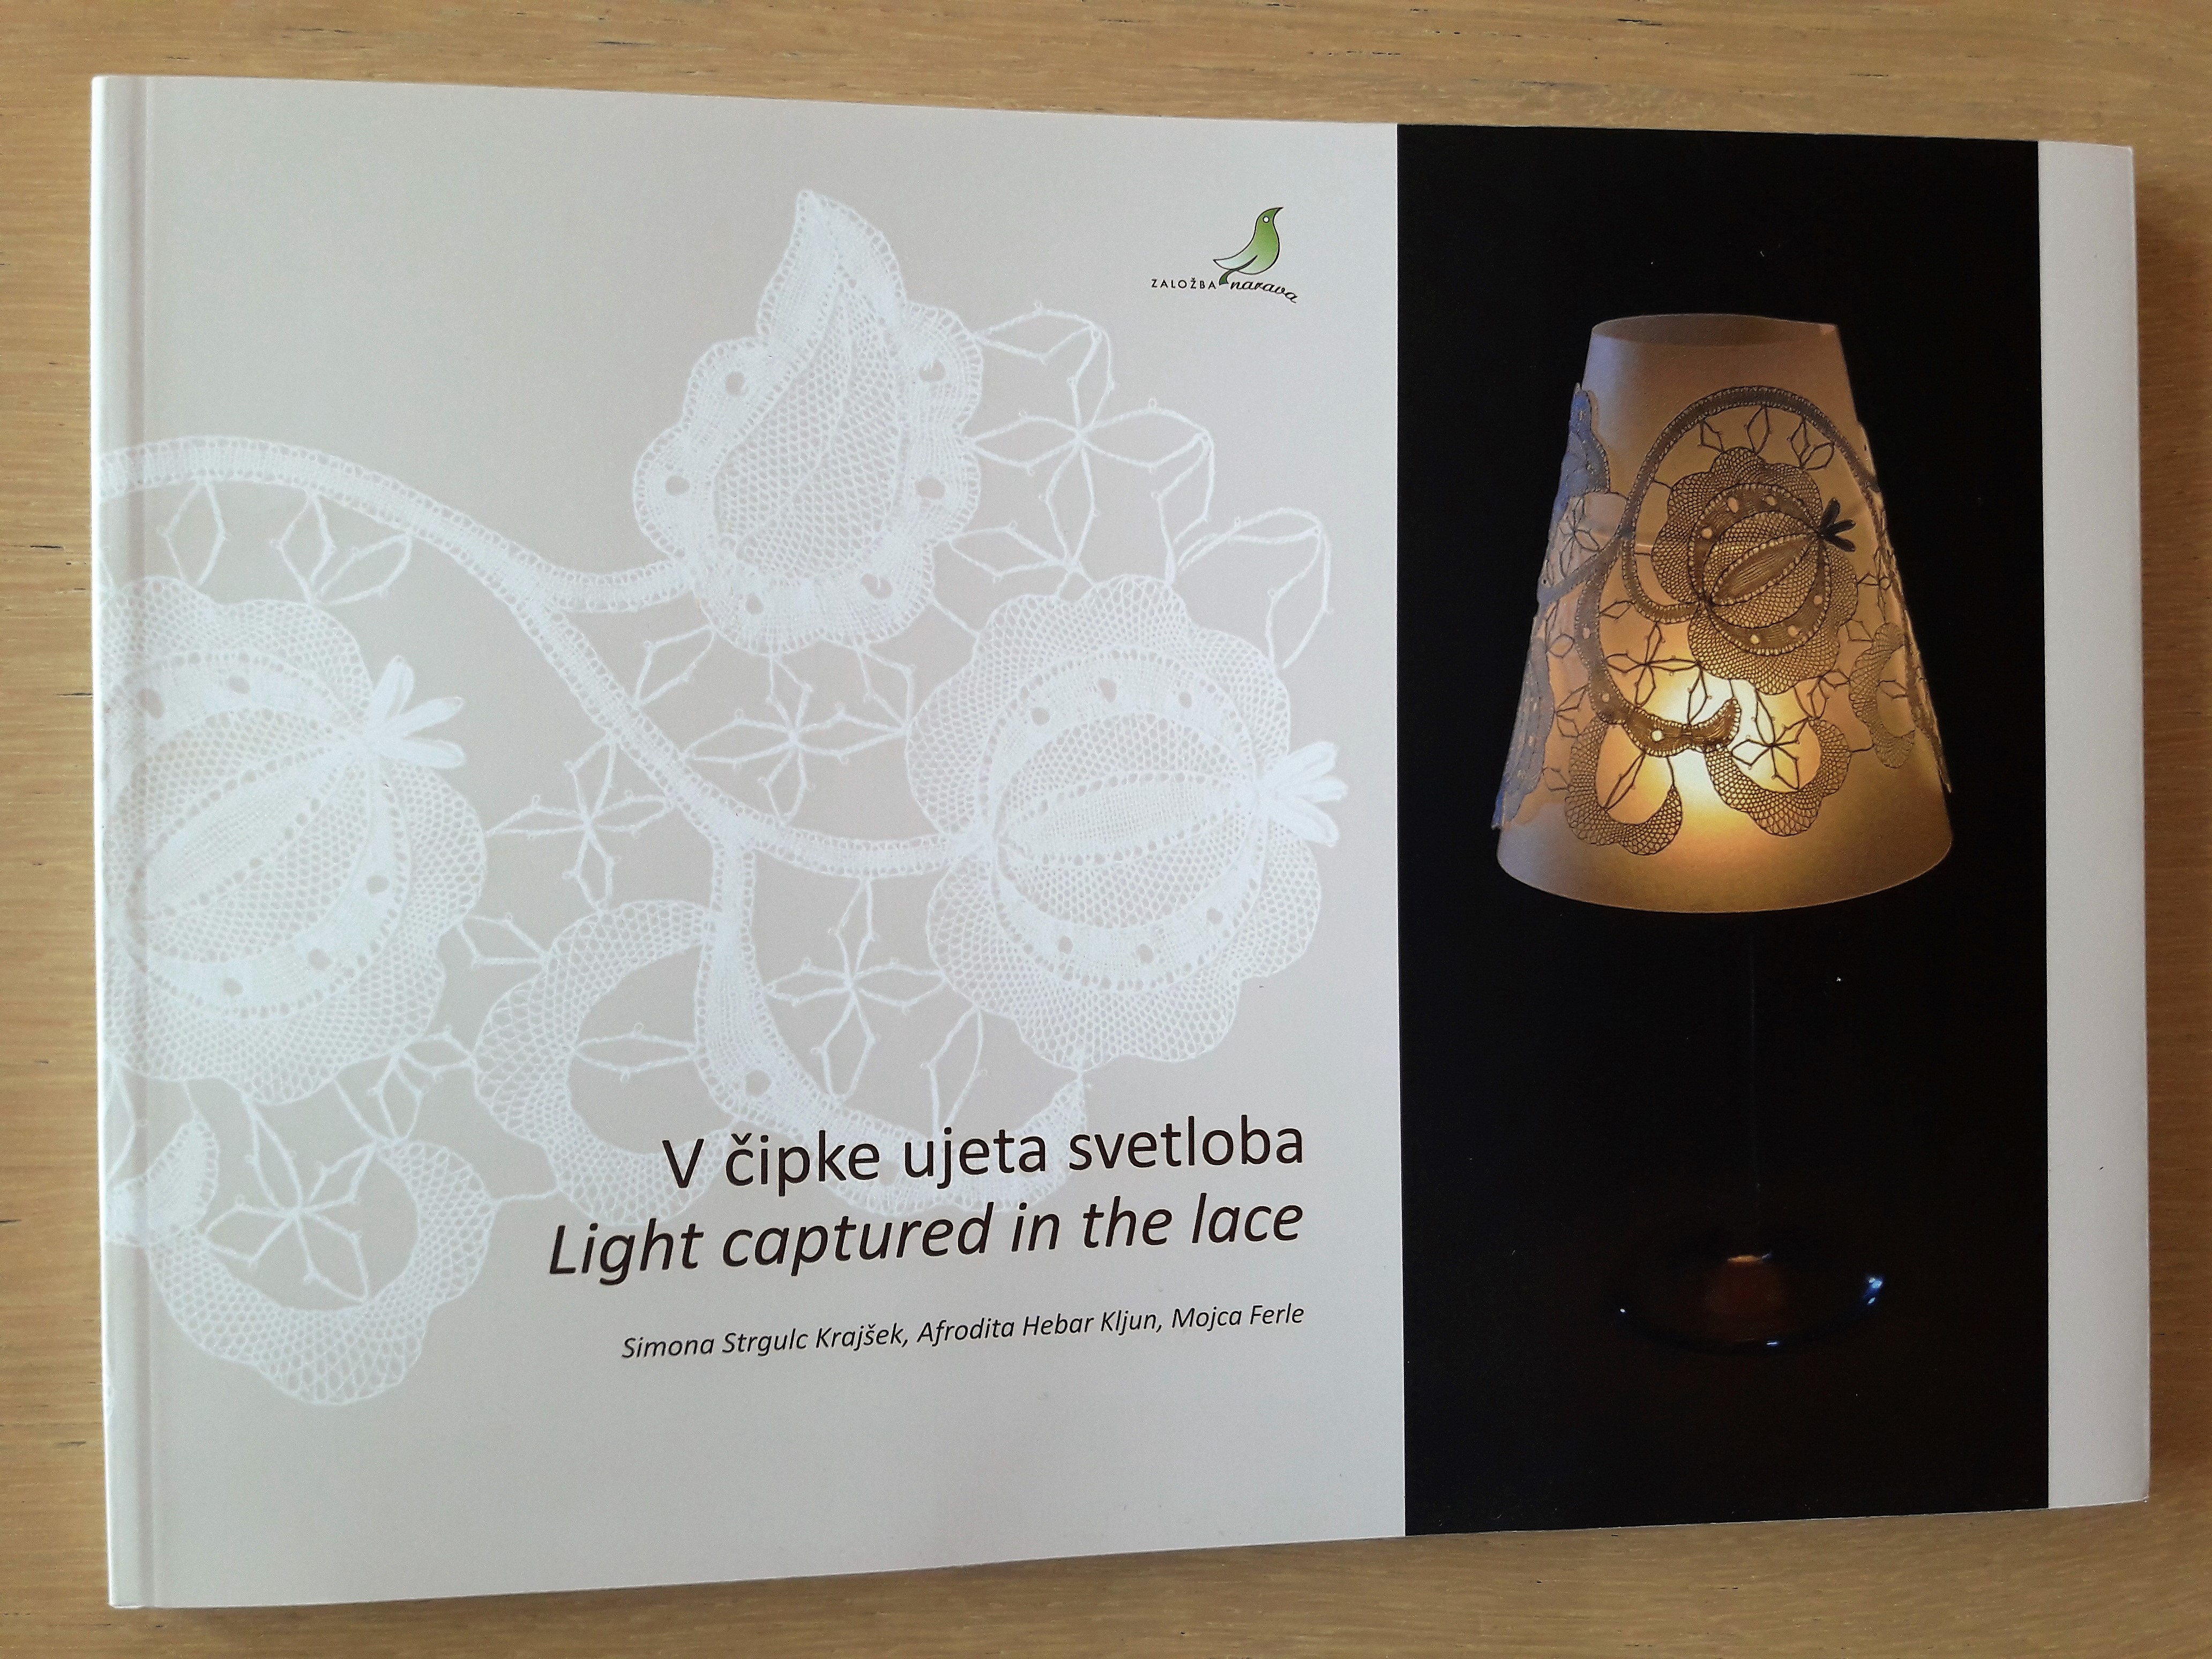 Publikacija 'V čipke ujeta svetloba' je izšla ob slovenski nacionalni predstavitvi na Nizozemskem